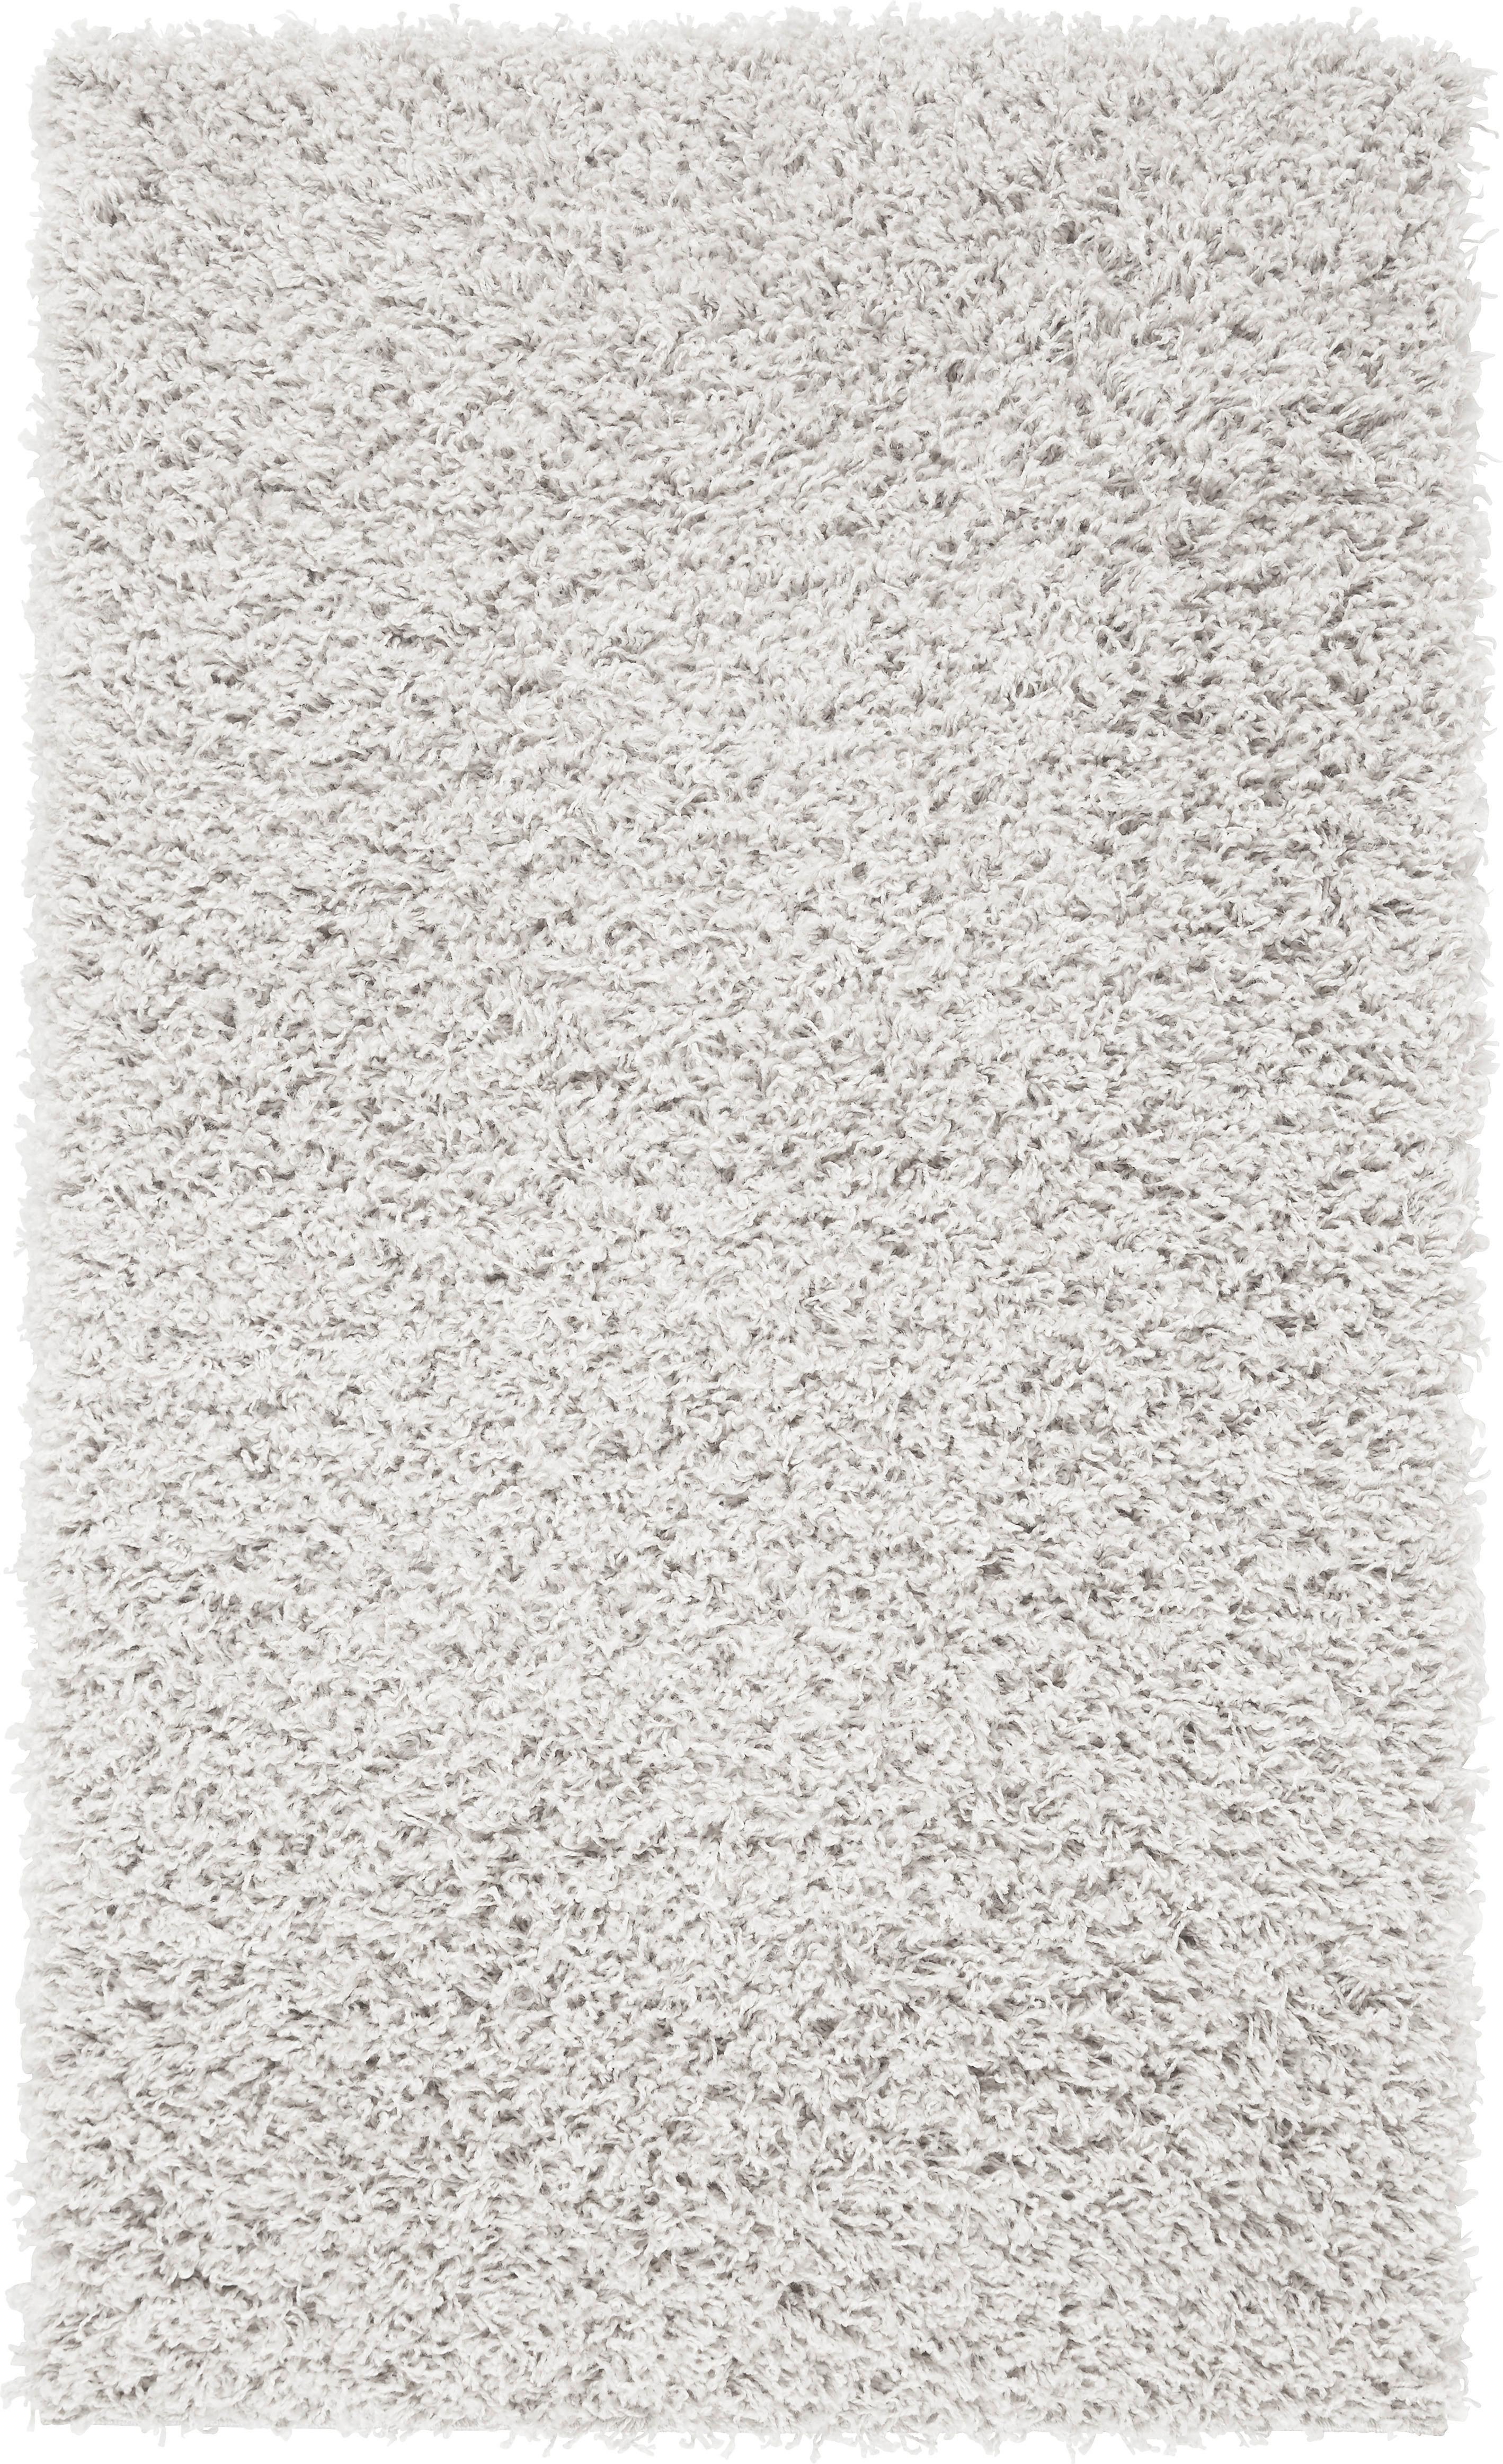 Hochflorteppich Bono in Weiß ca. 120x175cm - Weiß, Textil (120/175cm) - Modern Living